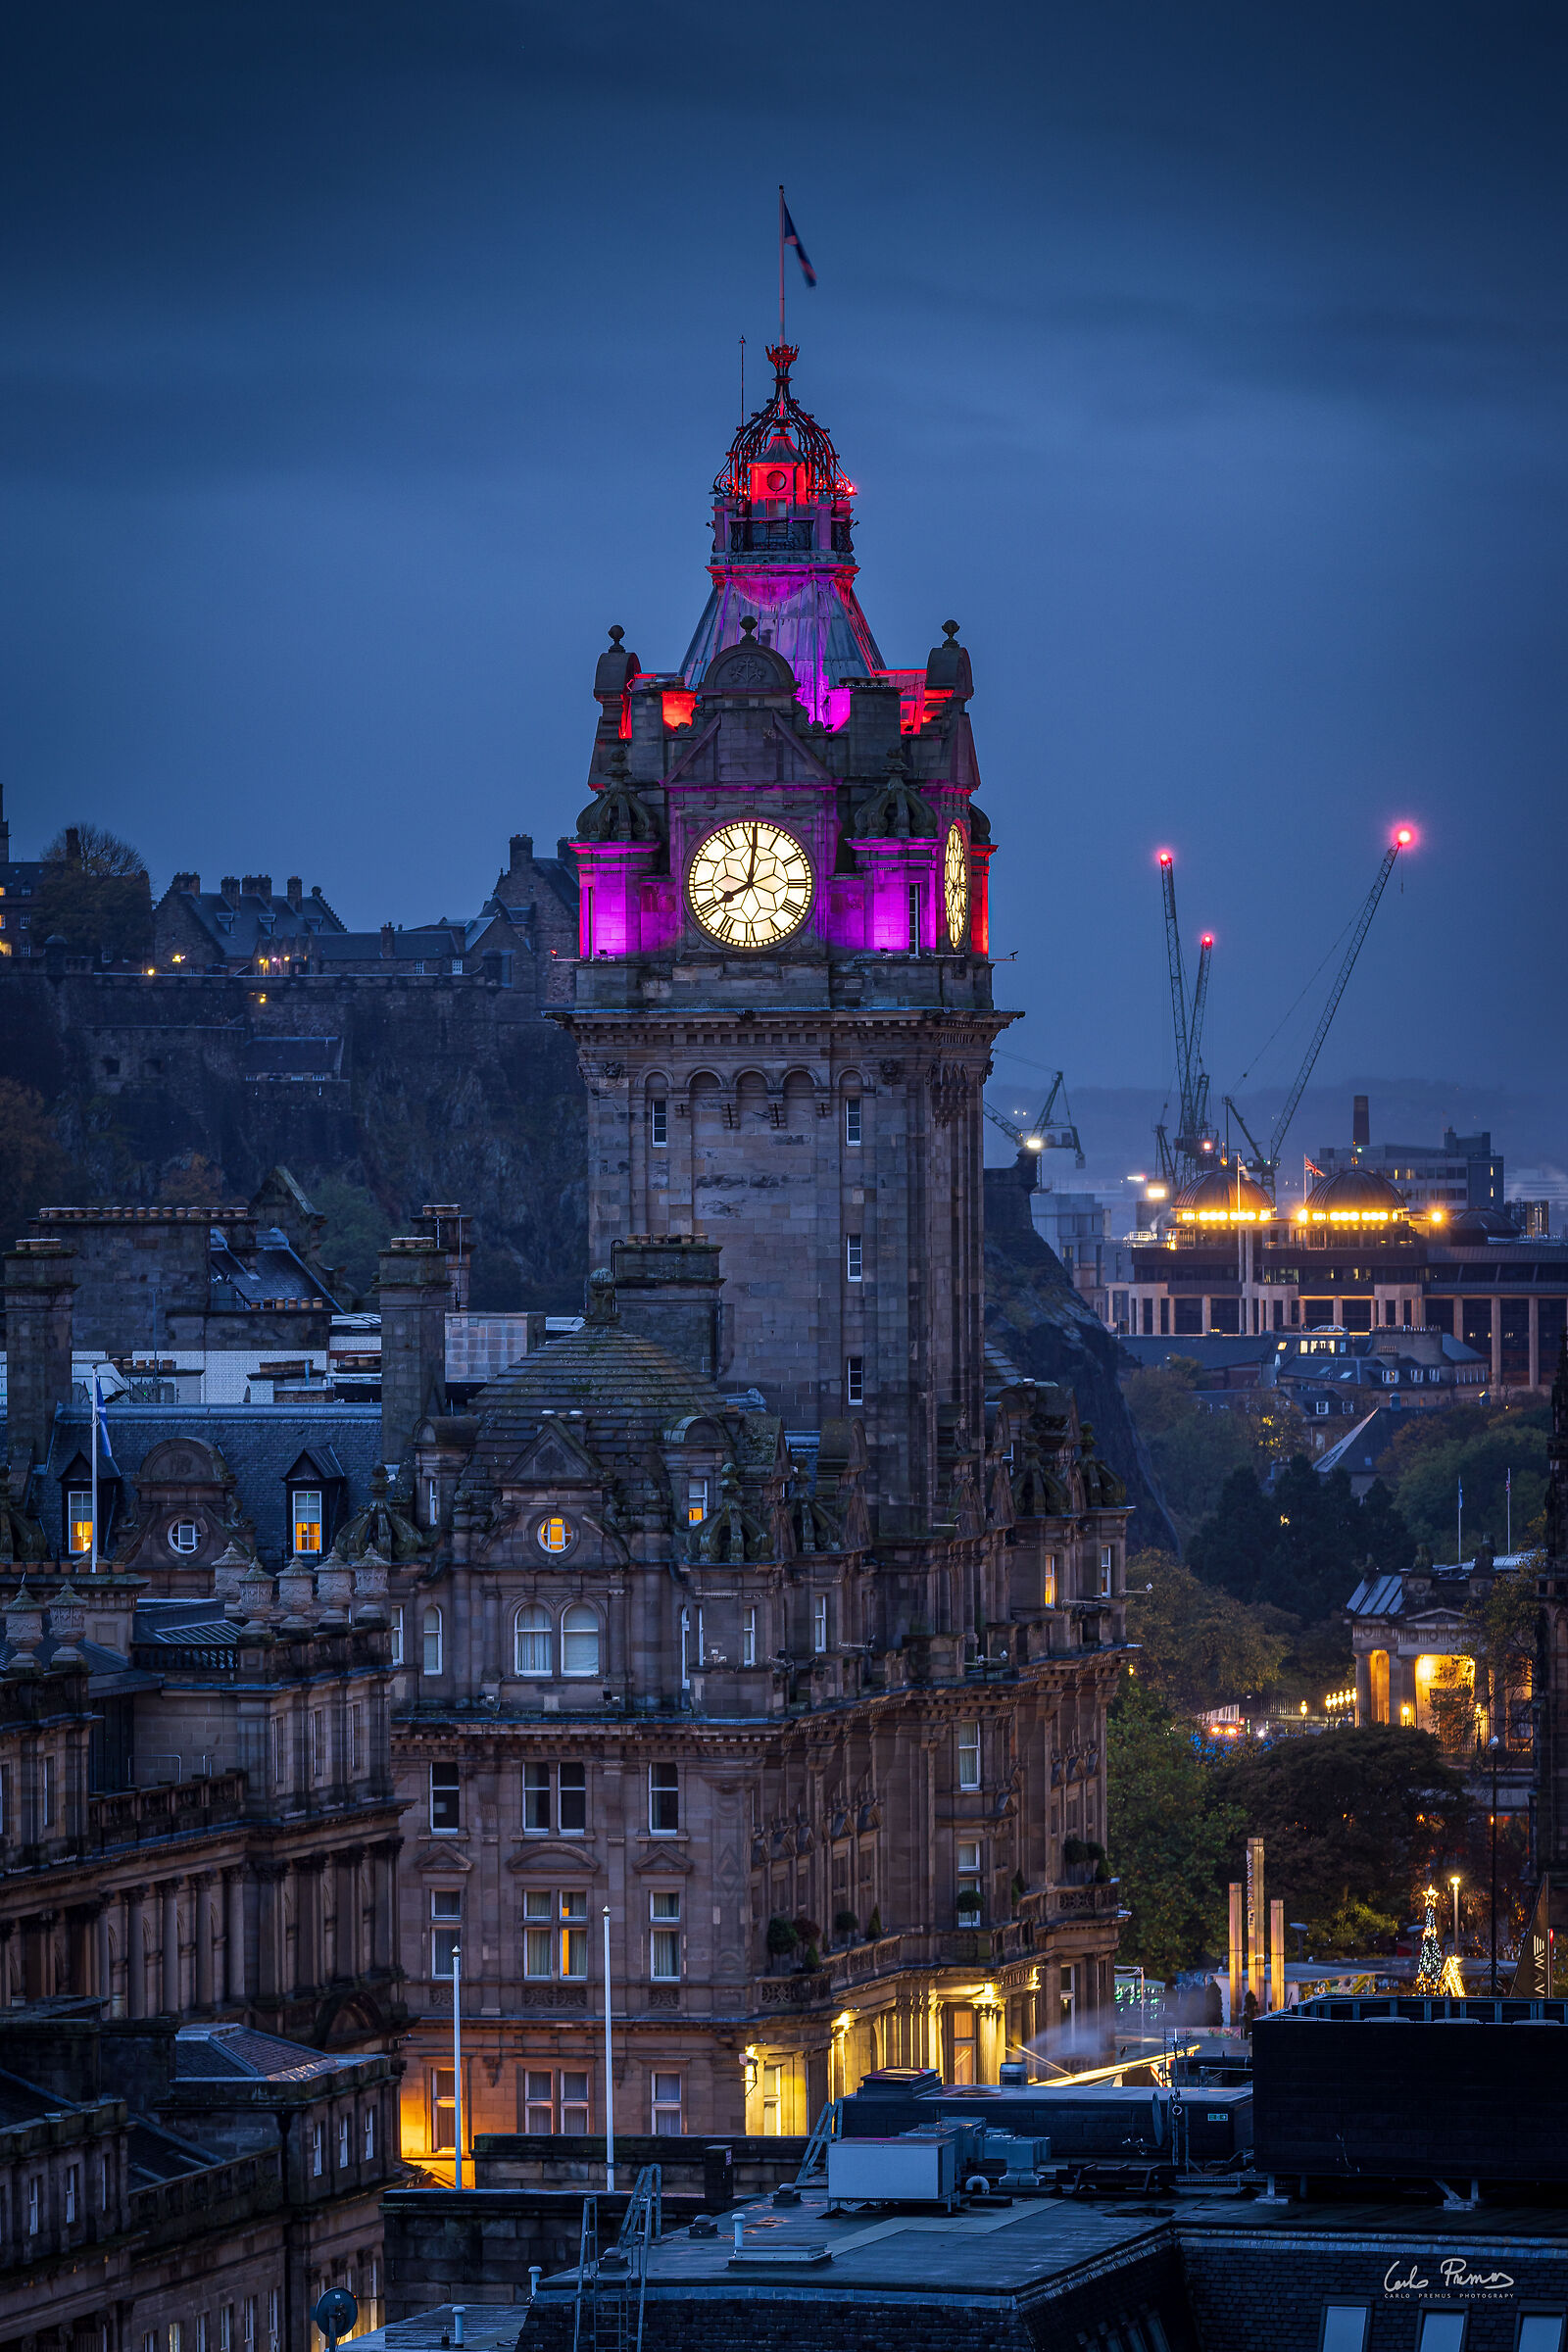 The magic of Edinburgh...